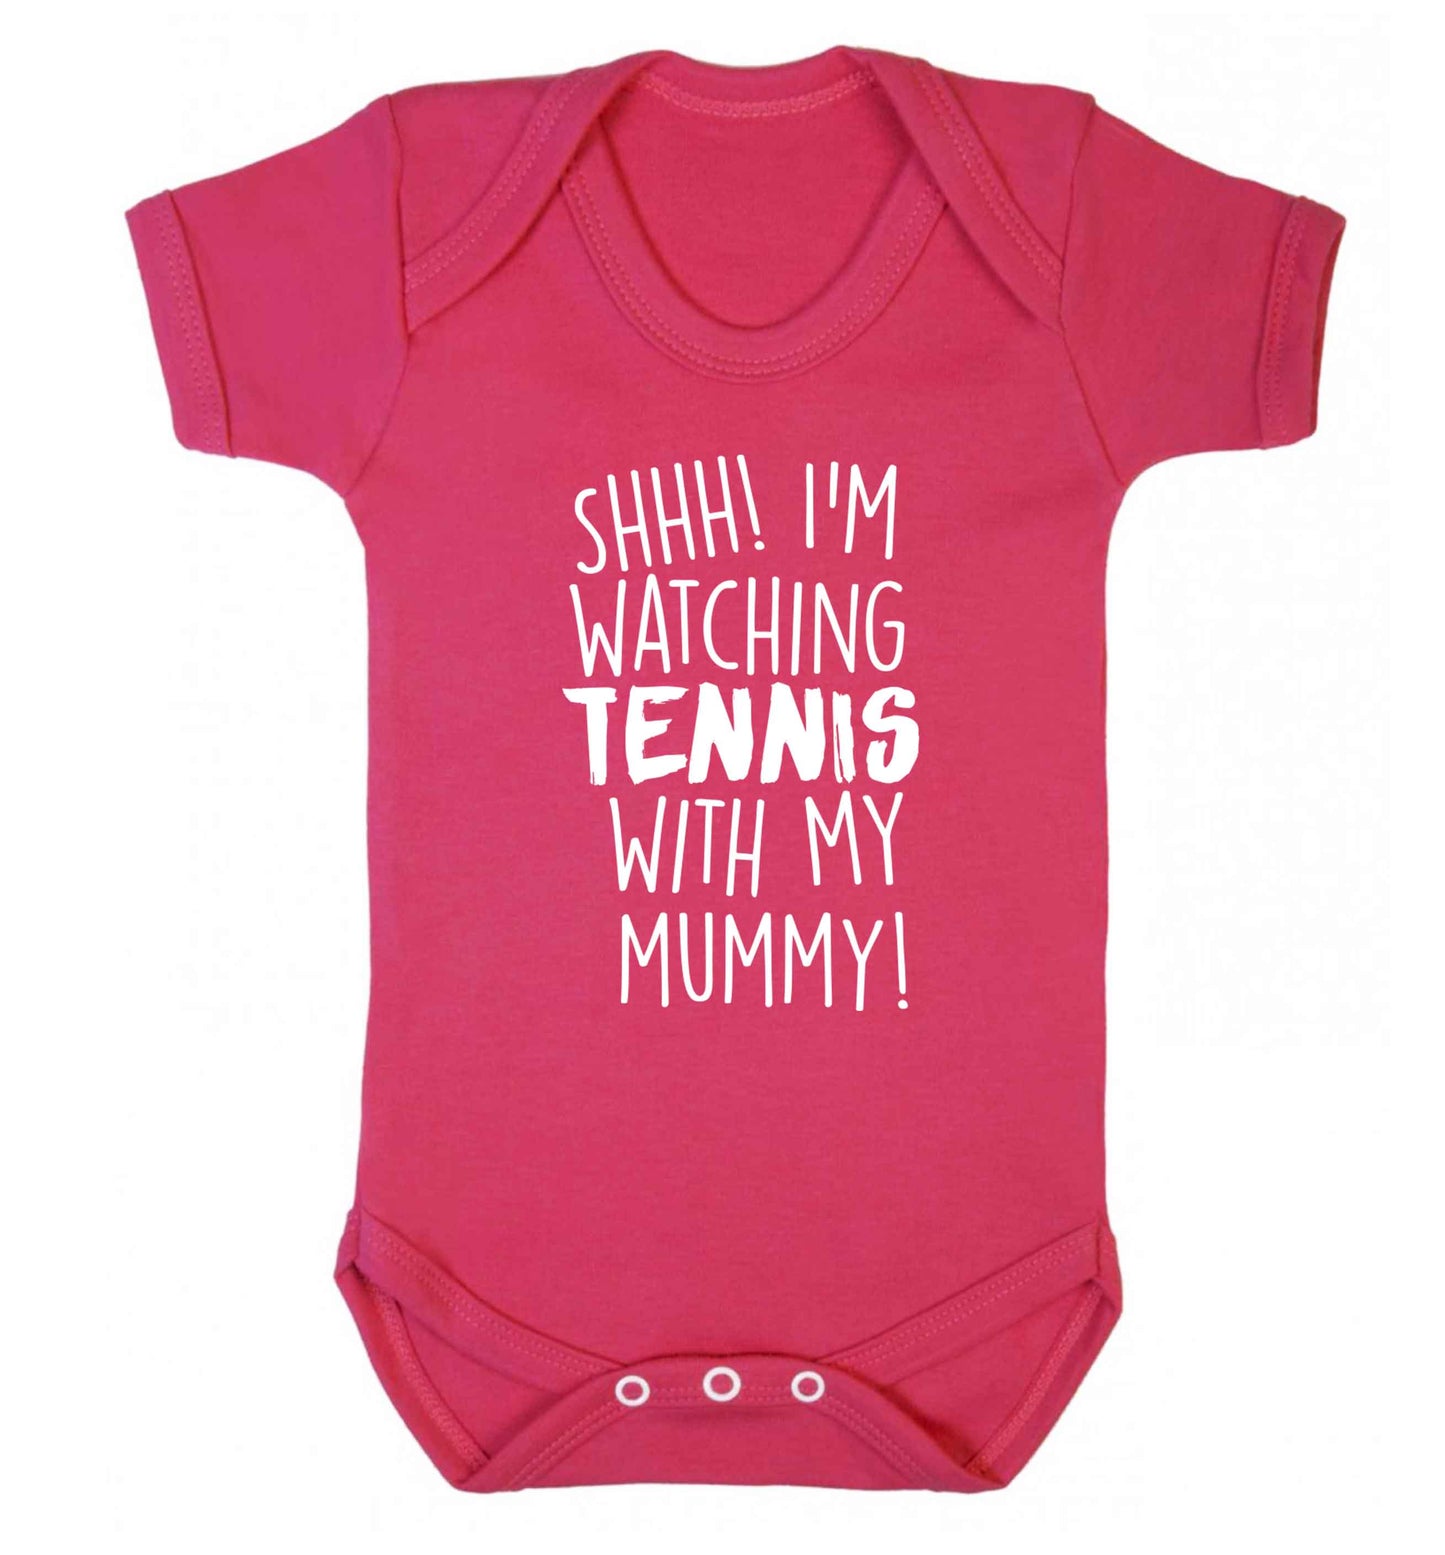 Shh! I'm watching tennis with my mummy! Baby Vest dark pink 18-24 months